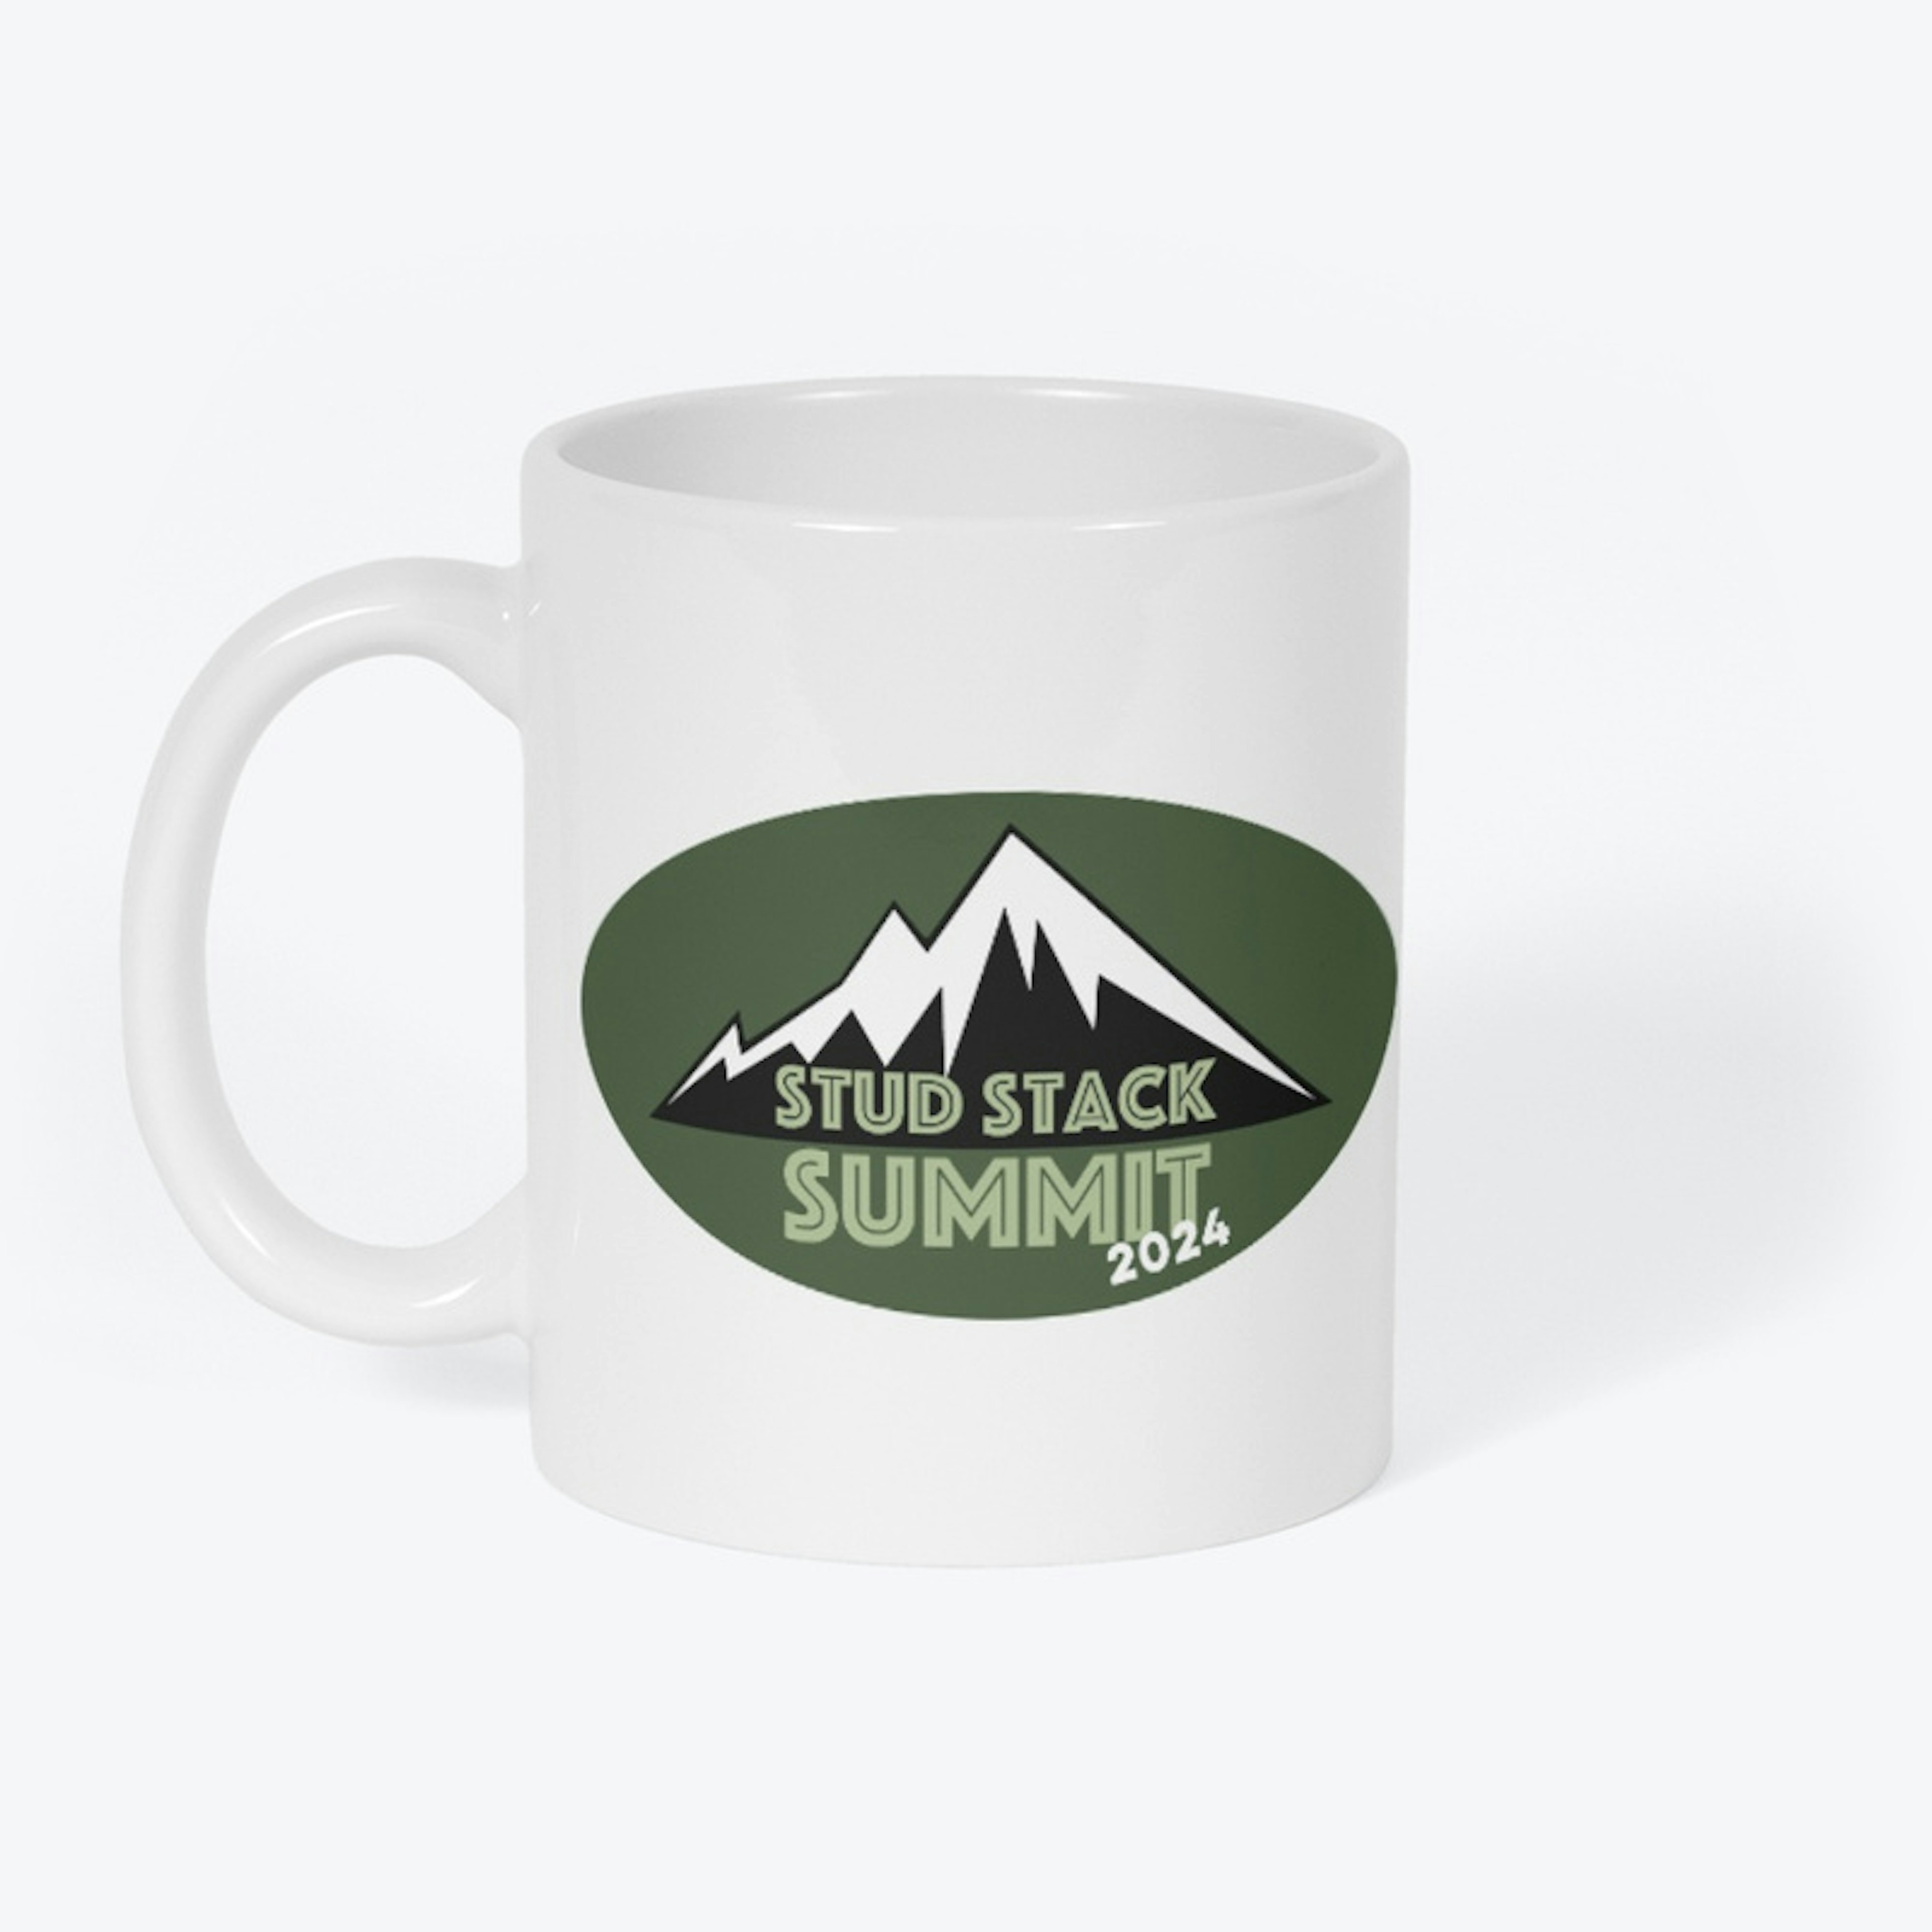 Limited Edition Stud Stack Summit Mug